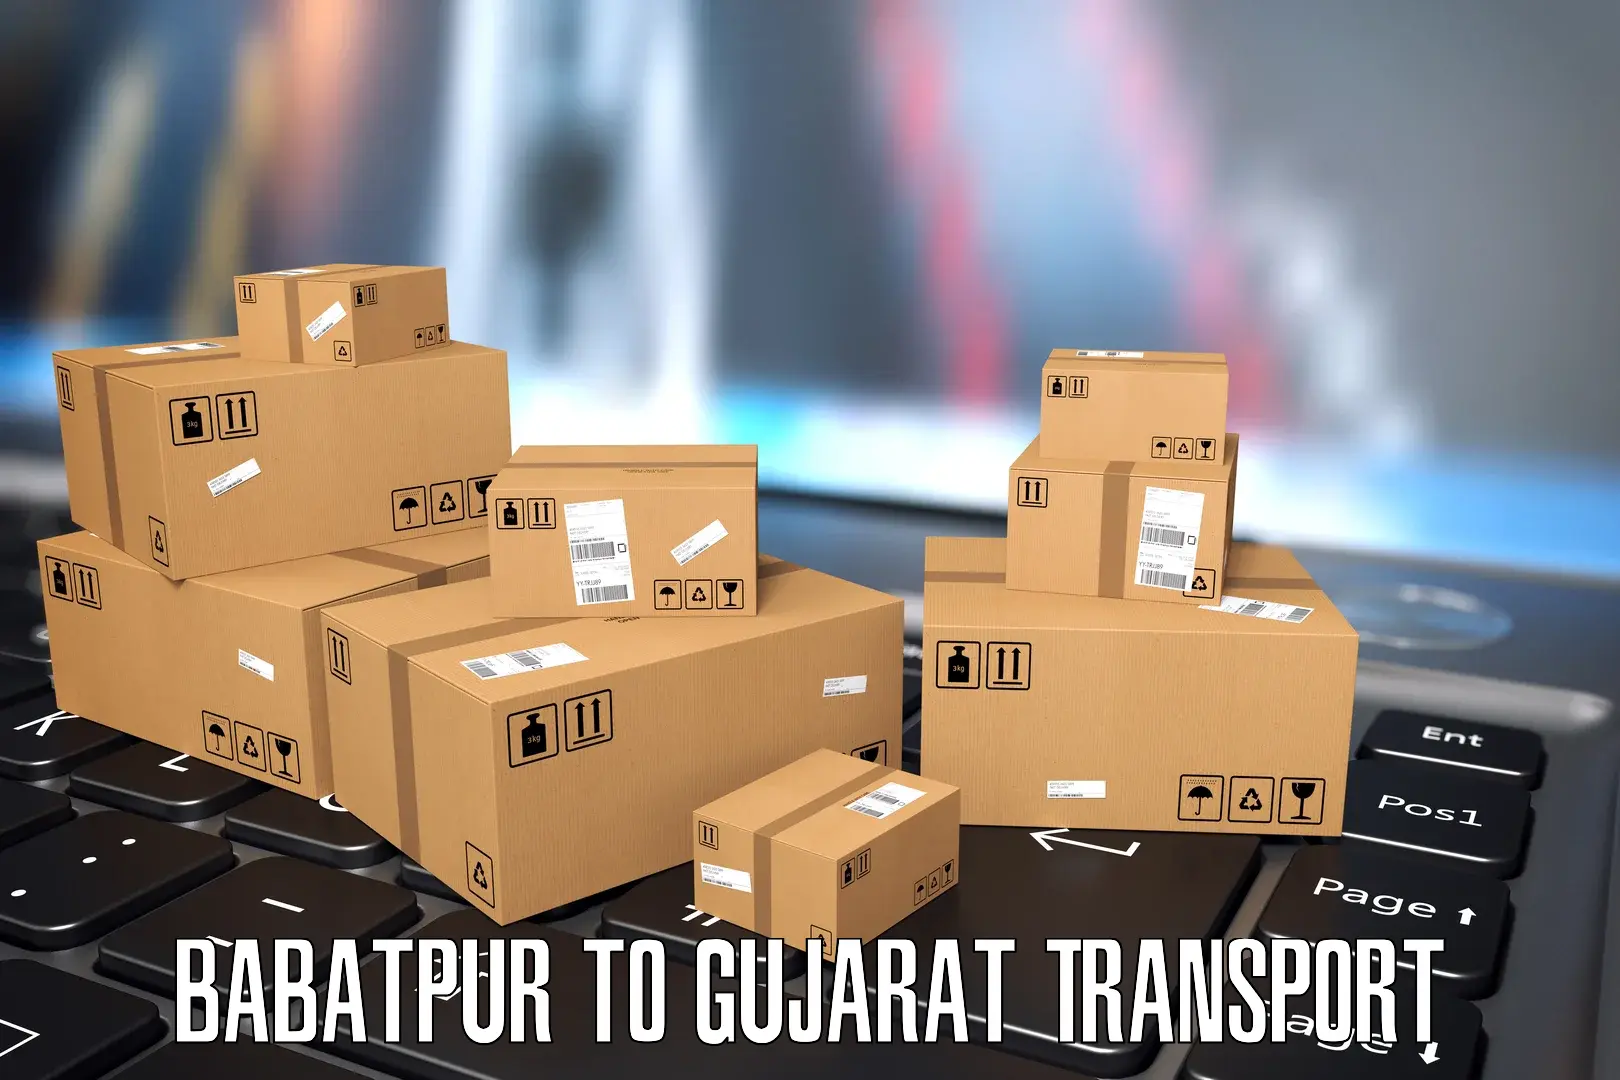 Furniture transport service Babatpur to IIT Gandhi Nagar